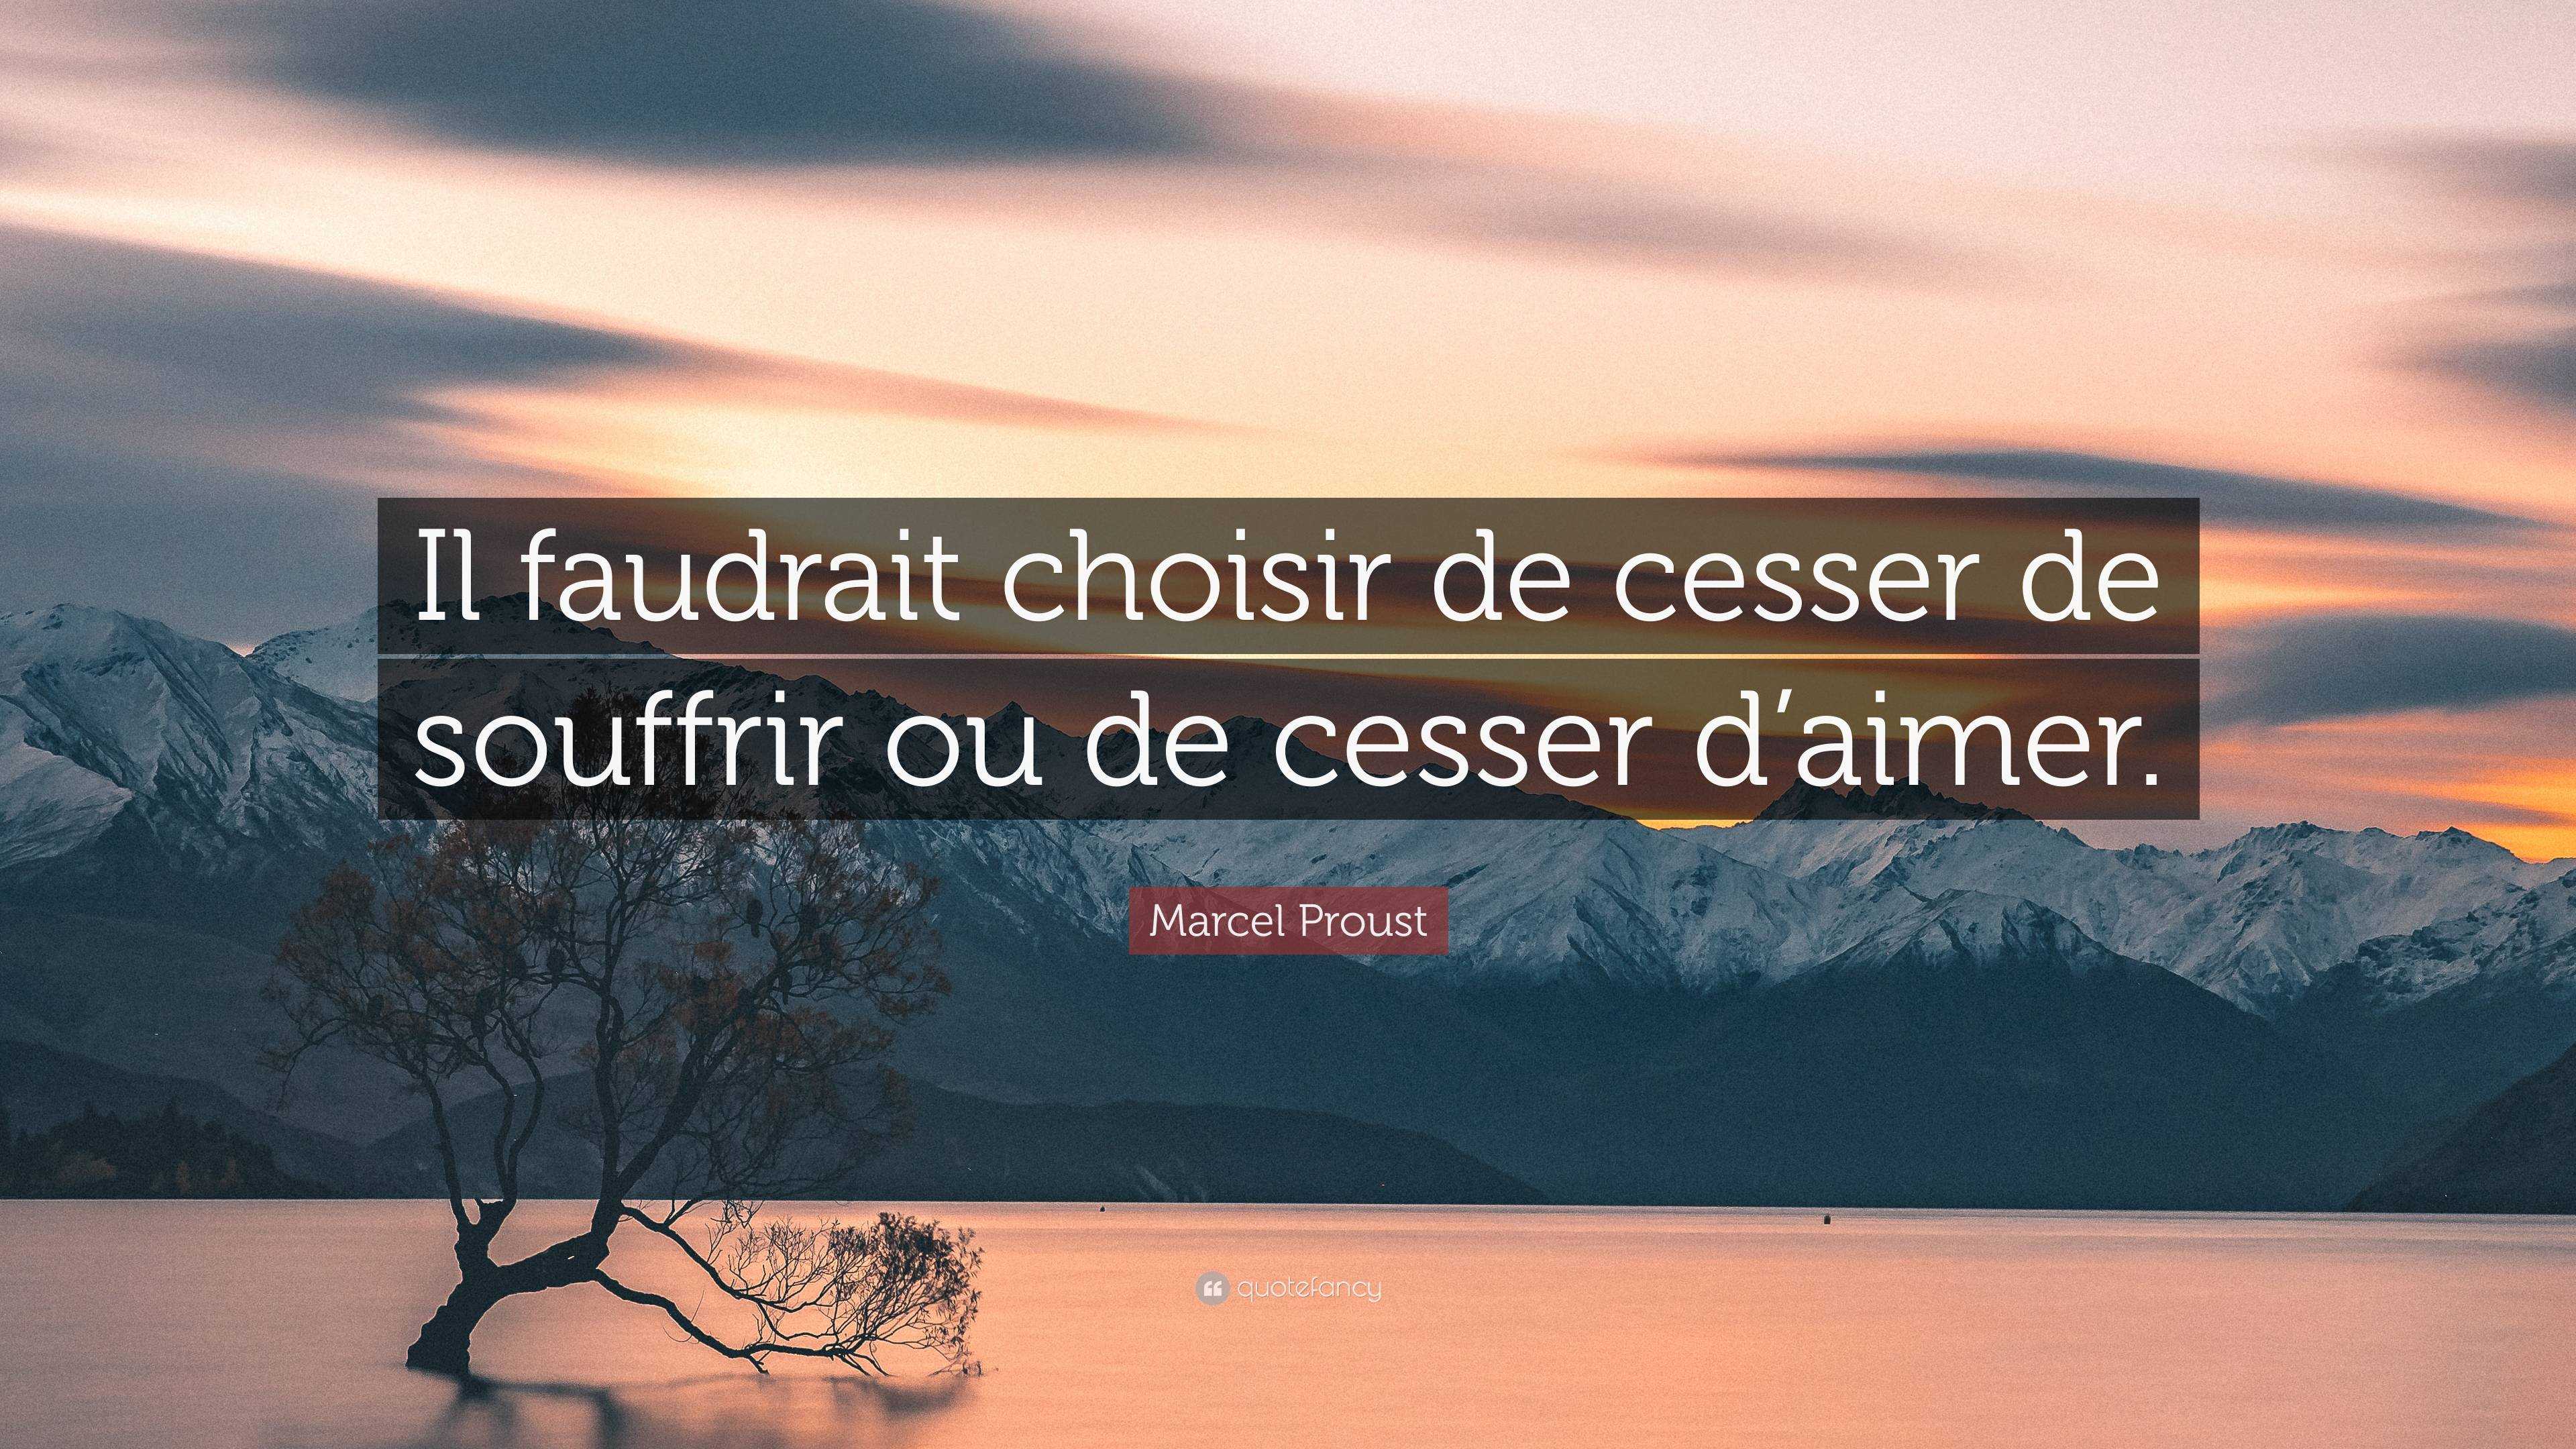 Marcel Proust Quote: “Il faudrait choisir de cesser de souffrir ou de cesser  d'aimer.”